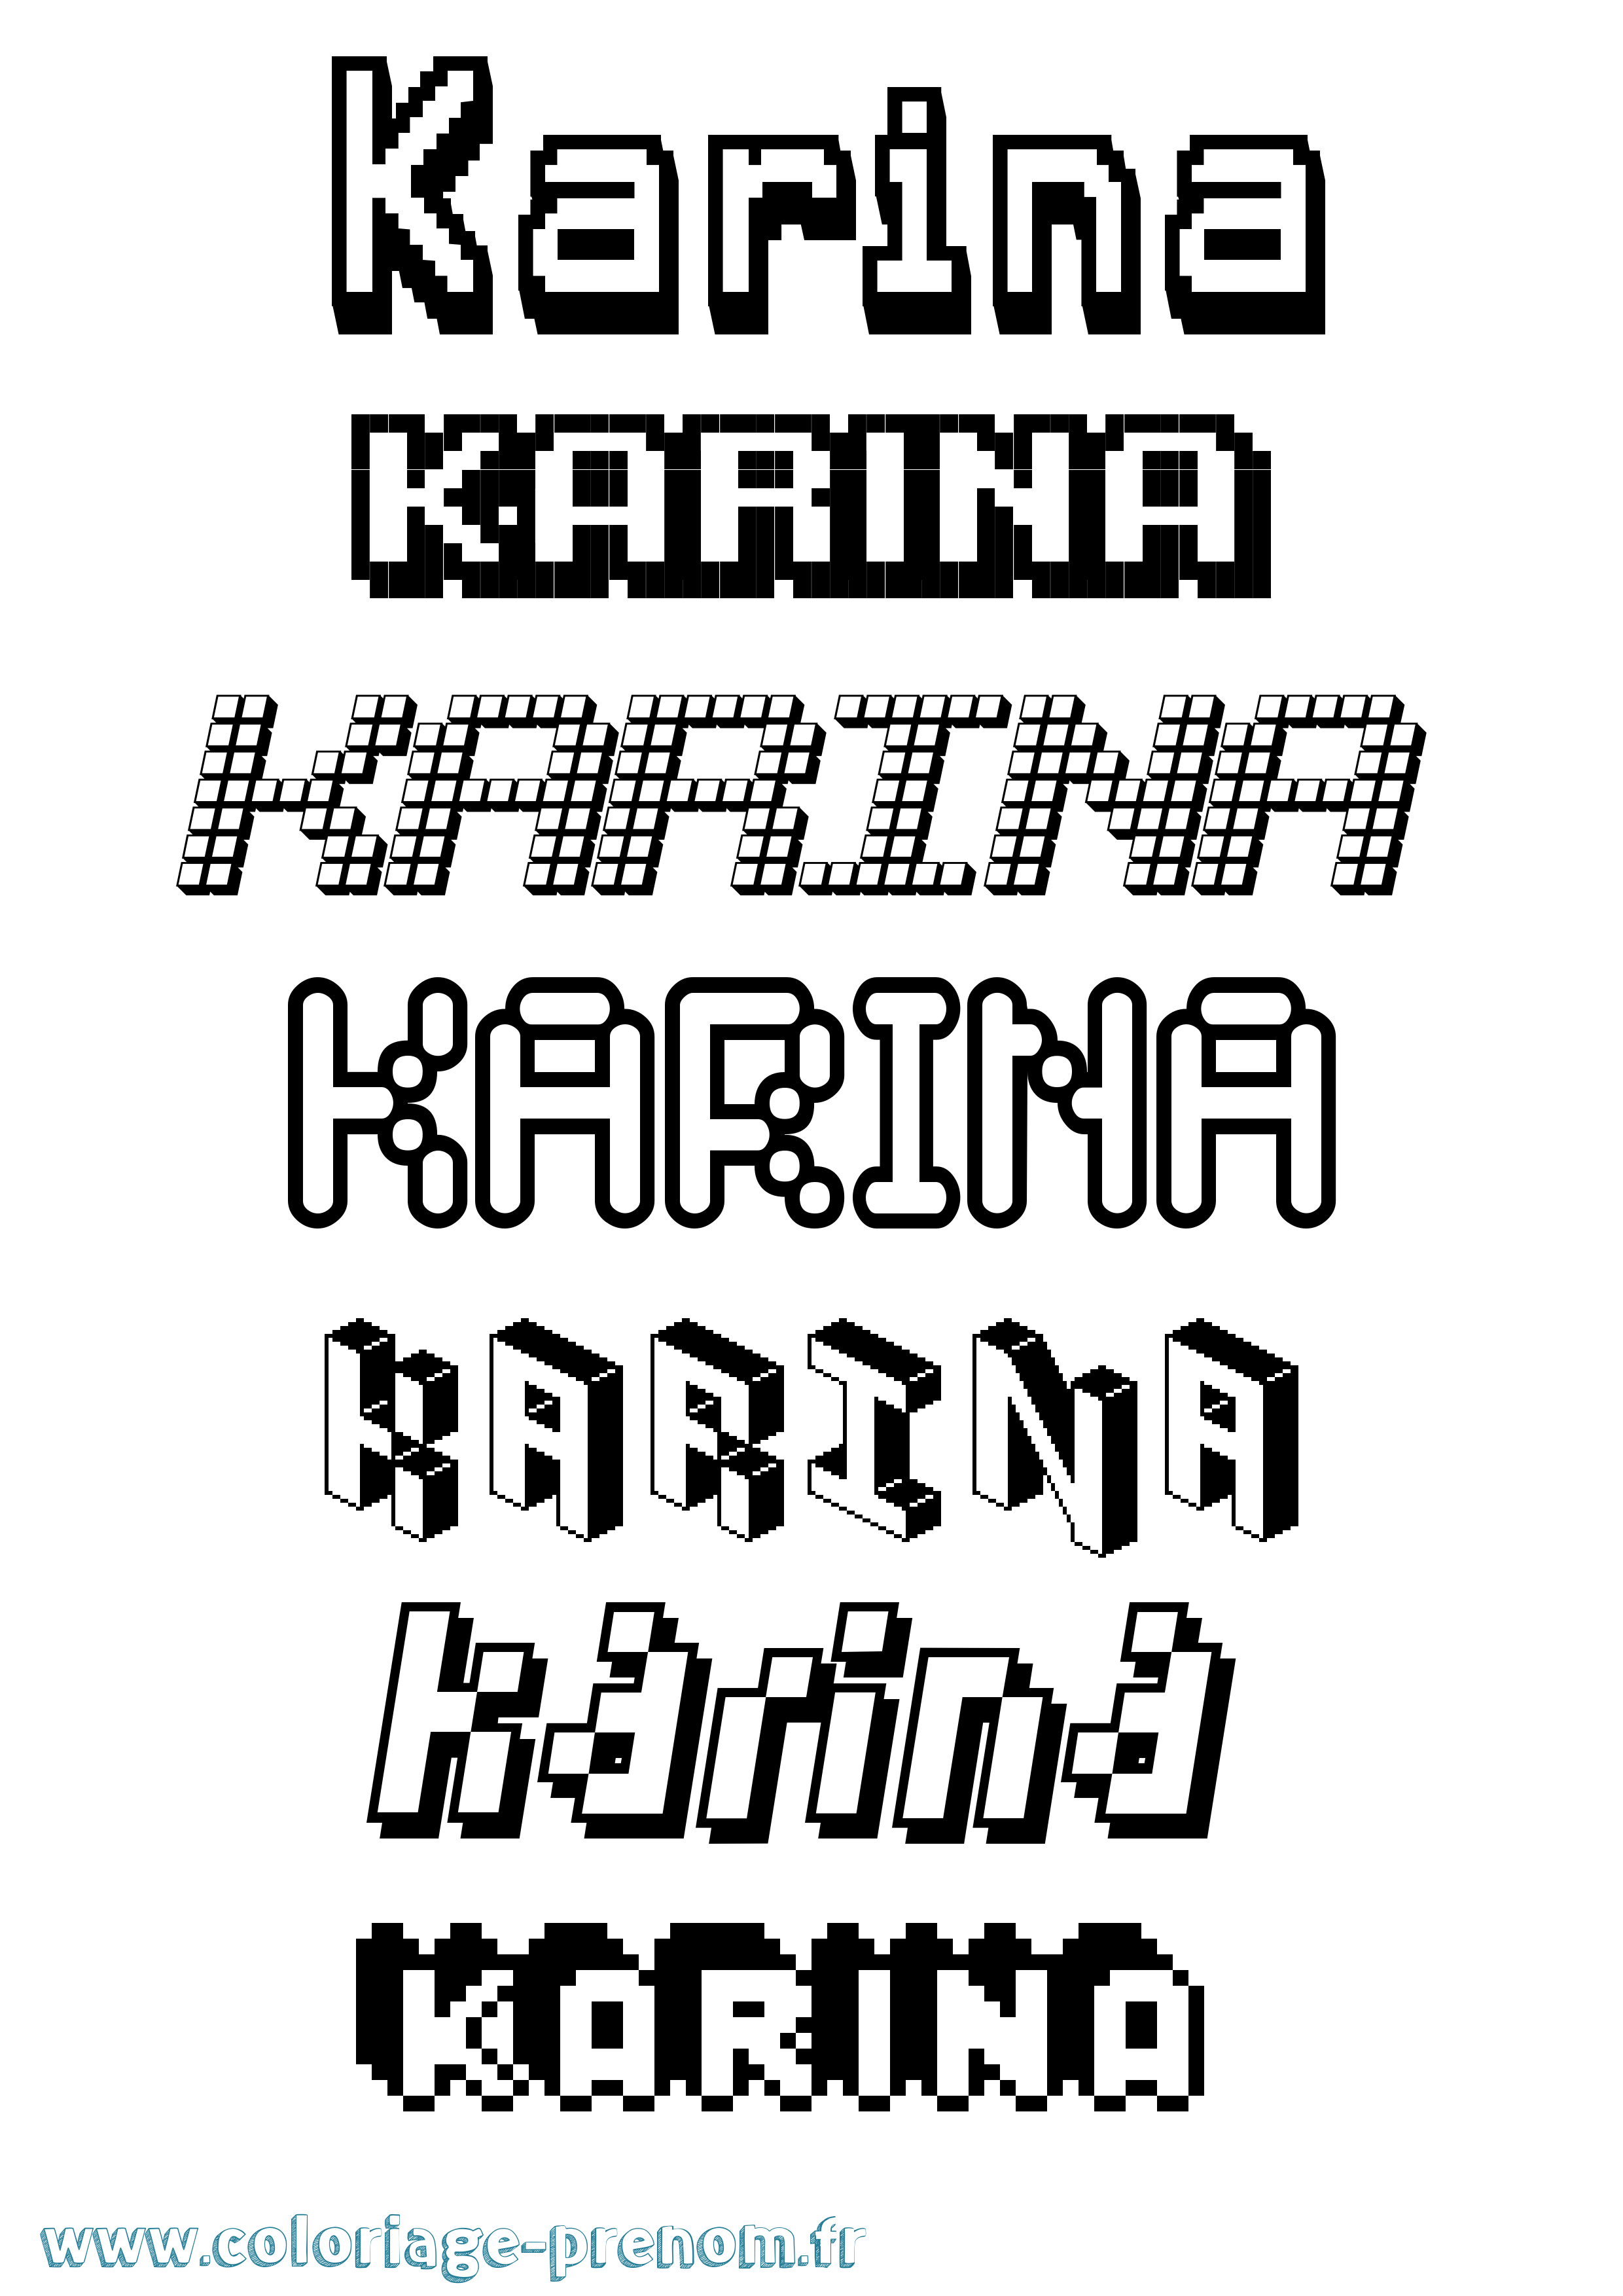 Coloriage prénom Karina Pixel